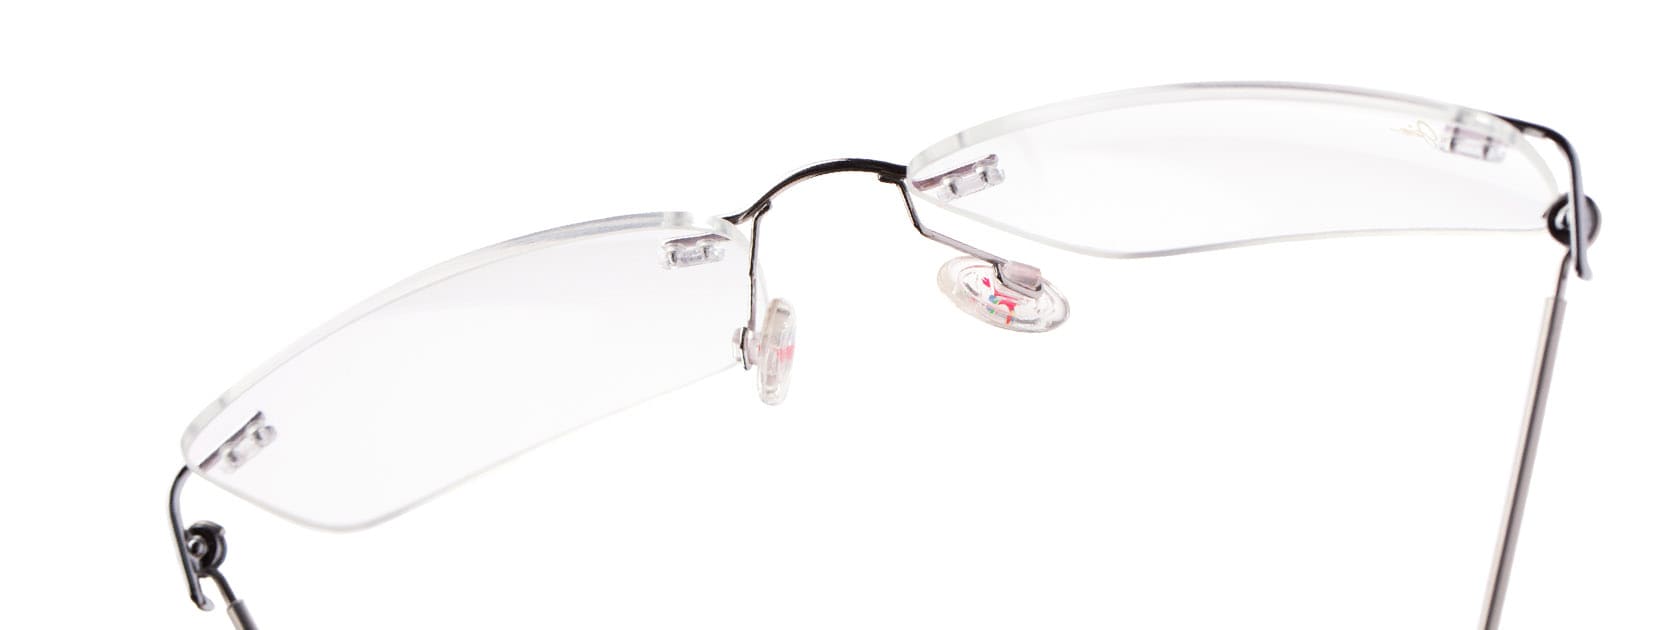 gafas oftálmicas al aire expuestas sobre fondo blanco